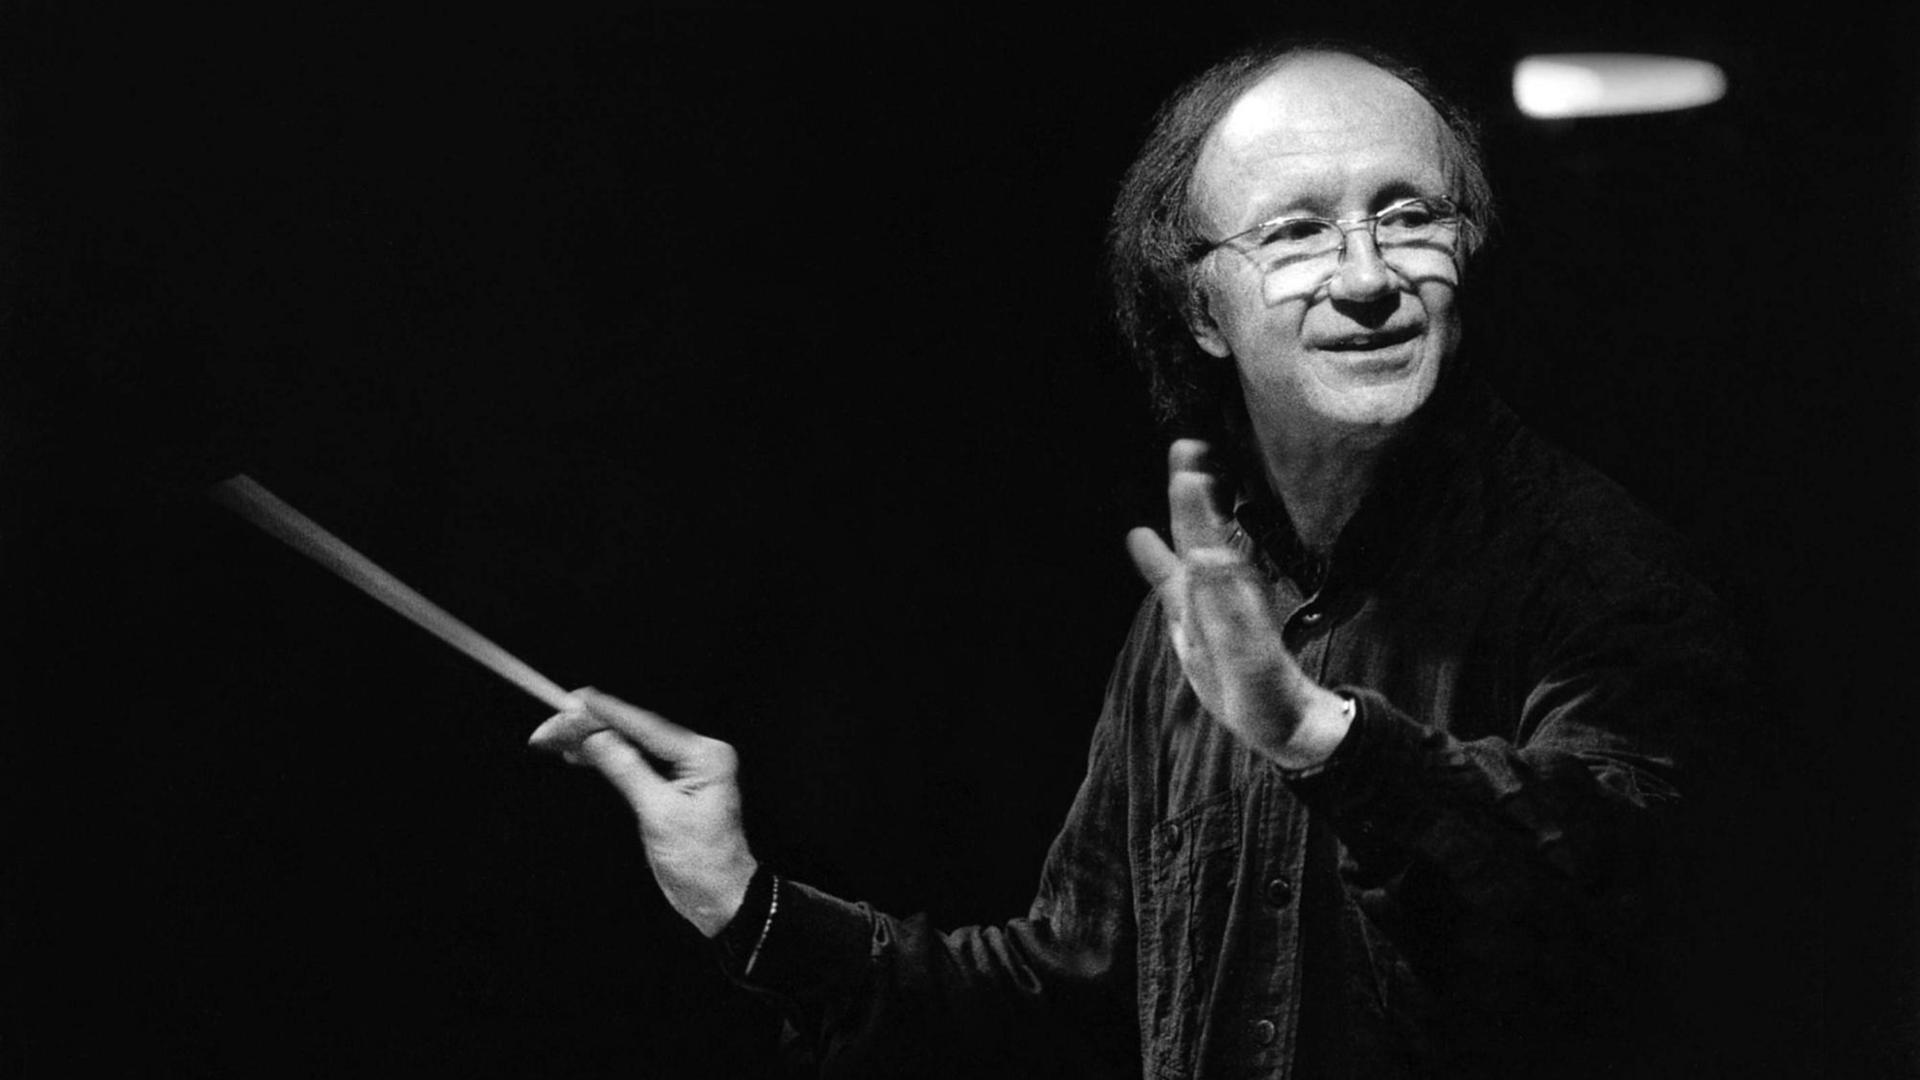 Heinz Holliger dirigiert 1996 mit Taktstock in einem schwarzen Hemd die Münchner Philharmoniker in der Philharmonie München, Schwarz-Weiß-Aufnahme